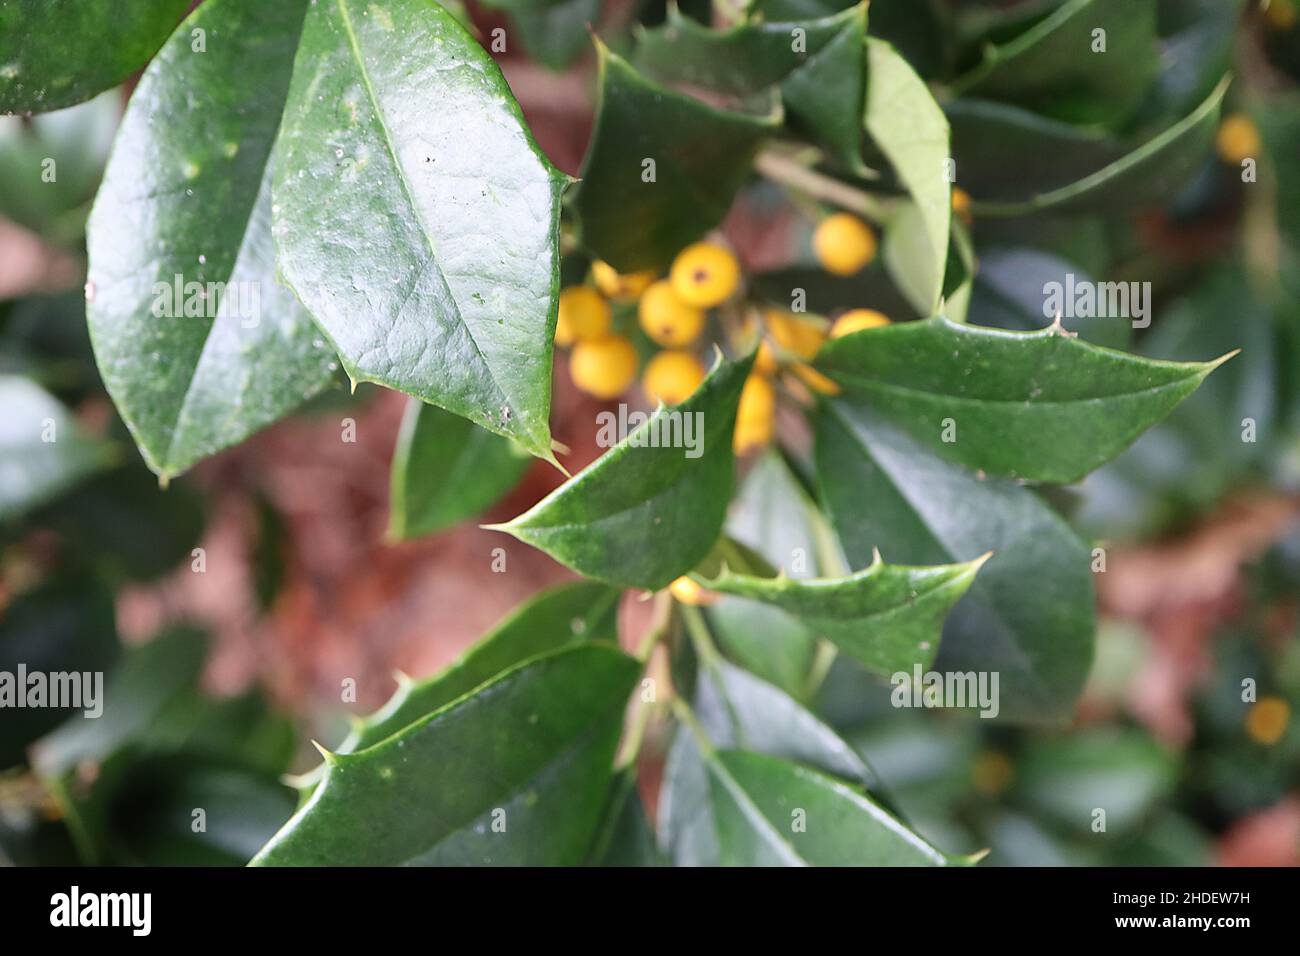 Ilex opaca per xanthocarpa agrifoglio americano a bacca gialla – bacche giallo arancio e foglie verde scuro lucide, gennaio, Inghilterra, Regno Unito Foto Stock